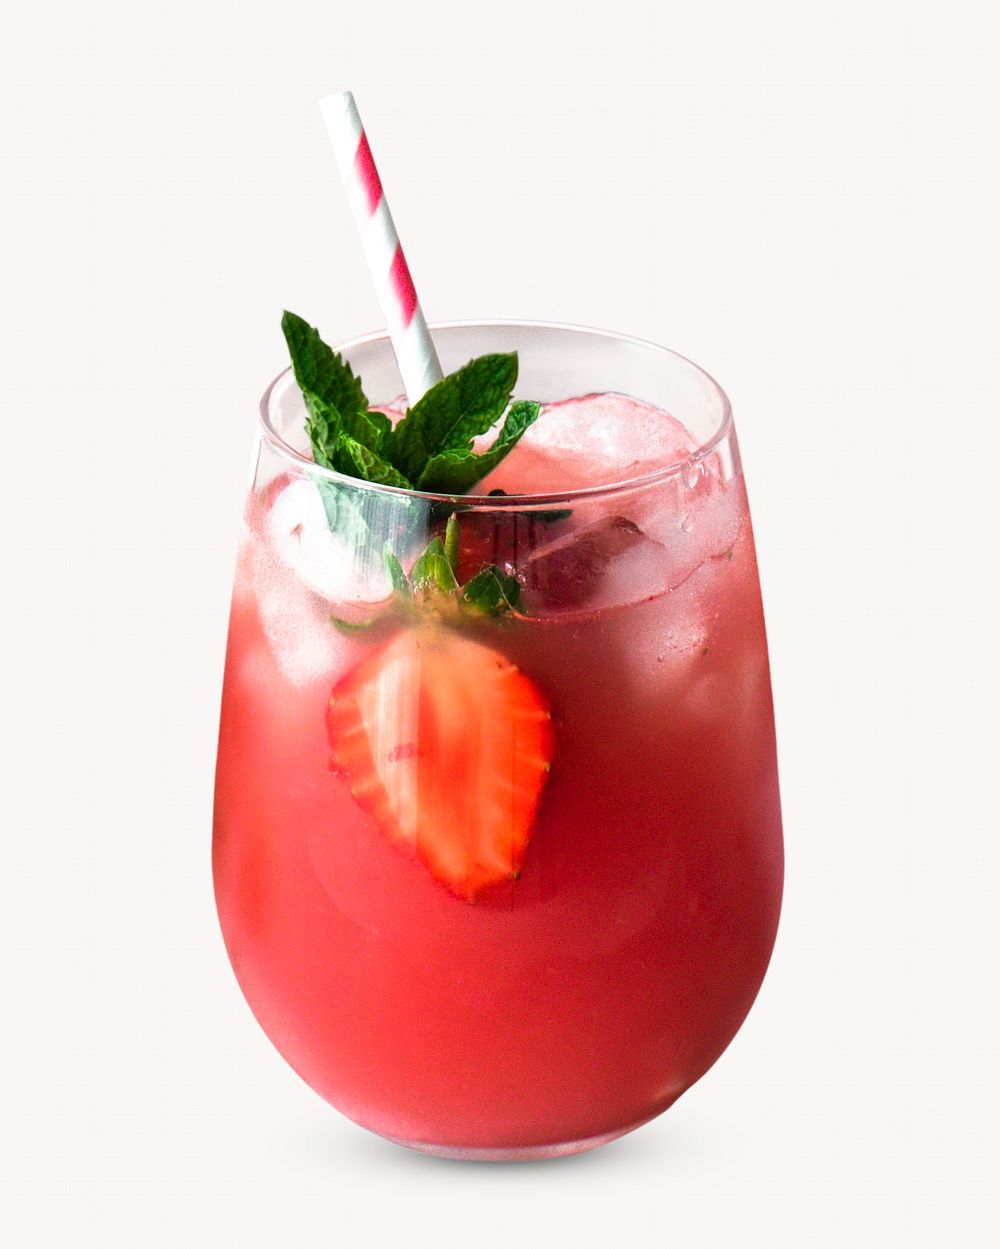 Fruit juice isolated image